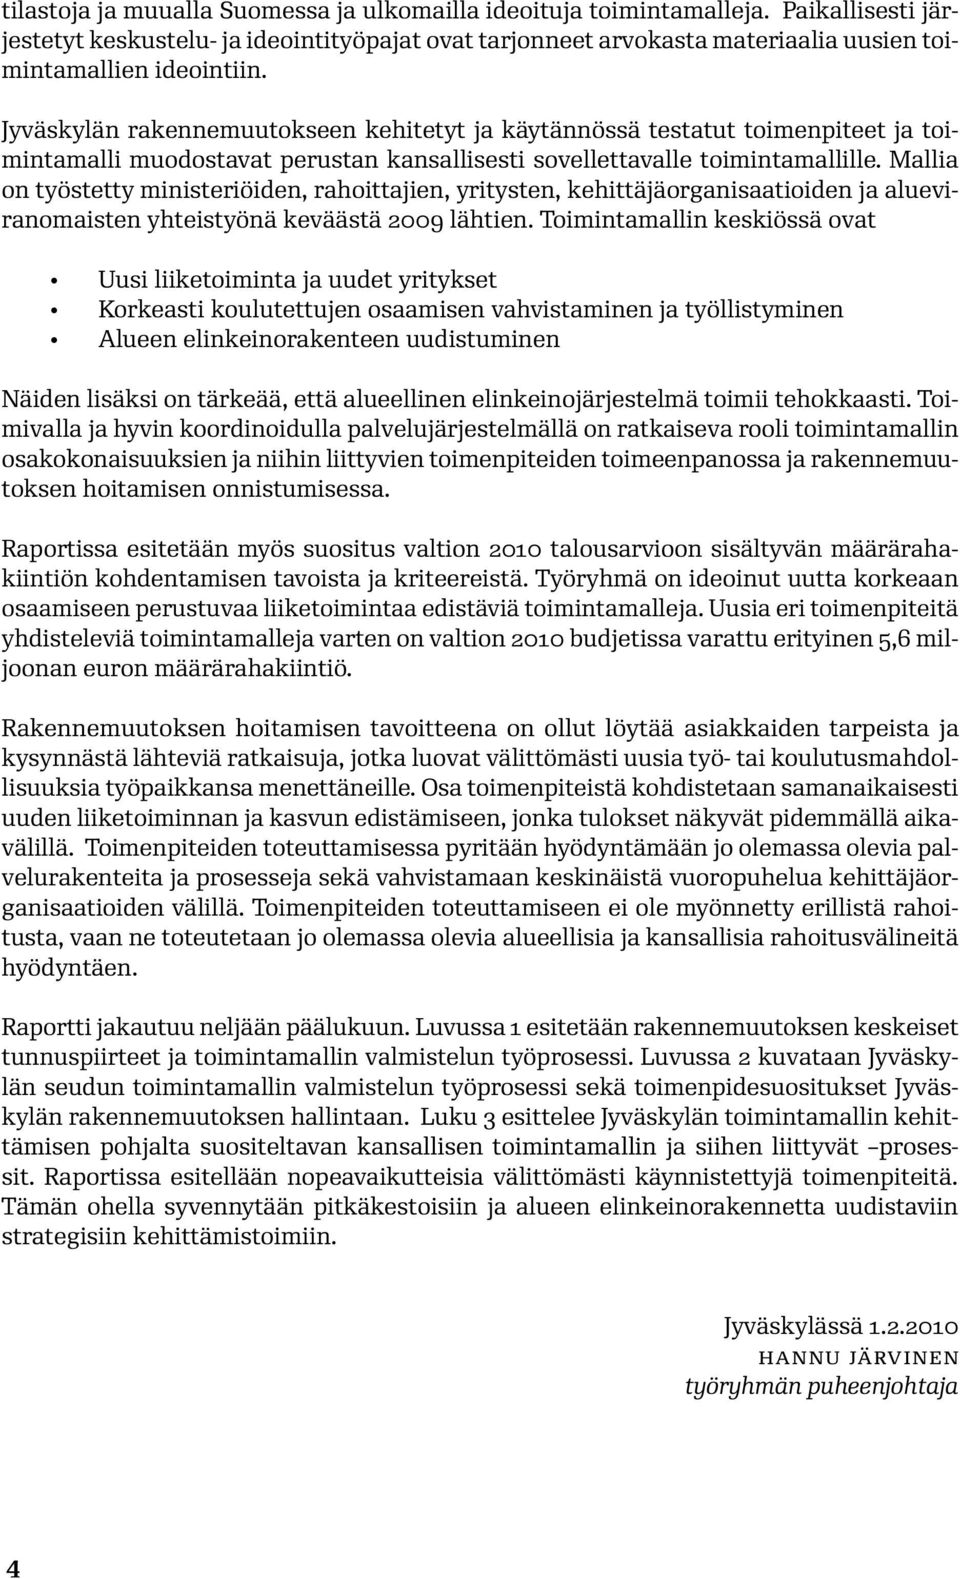 Jyväskylän rakennemuutokseen kehitetyt ja käytännössä testatut toimenpiteet ja toimintamalli muodostavat perustan kansallisesti sovellettavalle toimintamallille.